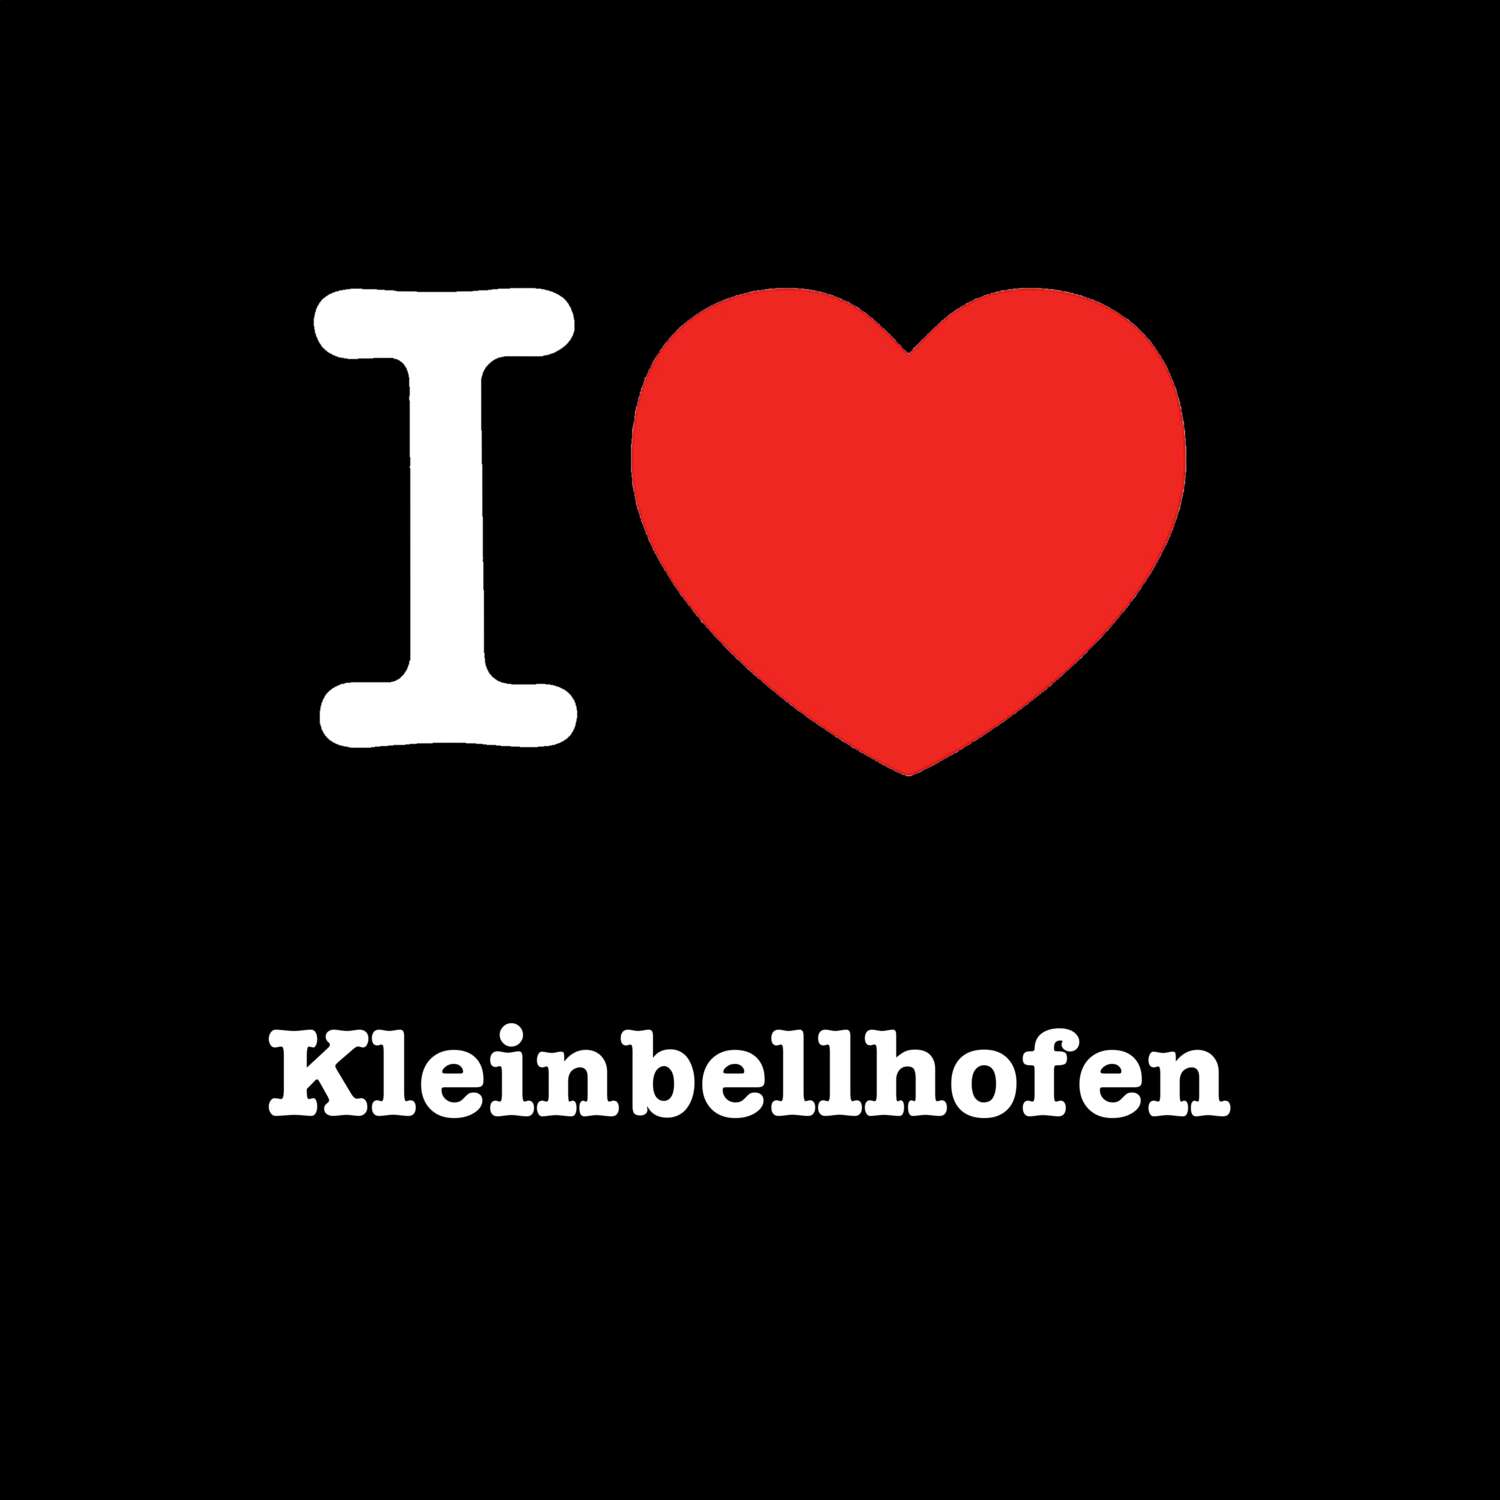 Kleinbellhofen T-Shirt »I love«